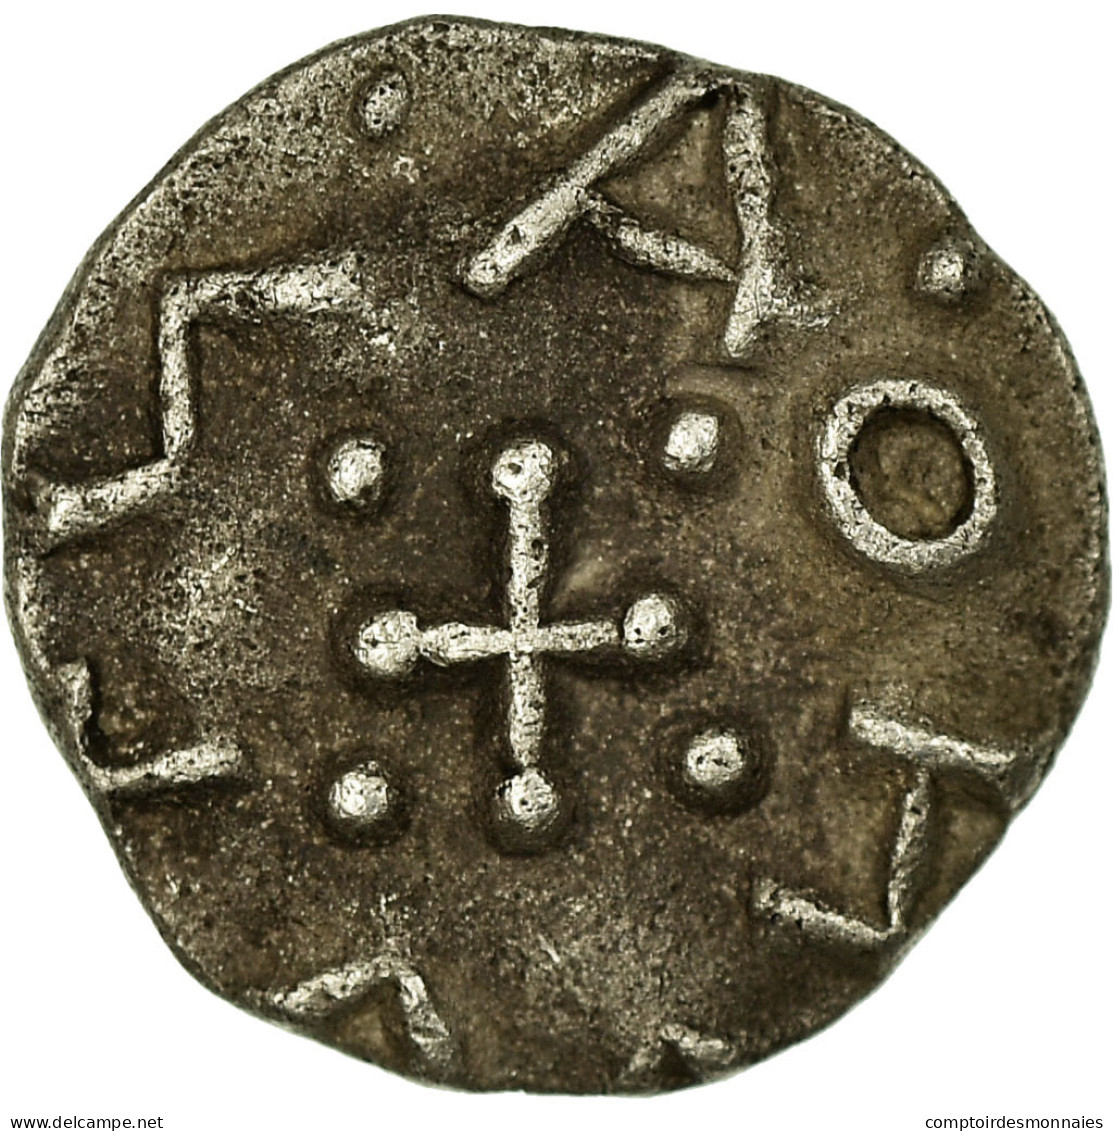 Monnaie, Grande-Bretagne, Frisia, Sceat, SUP, Argent, Spink:790D - …-1066 : Celtic / Anglo-Saxon